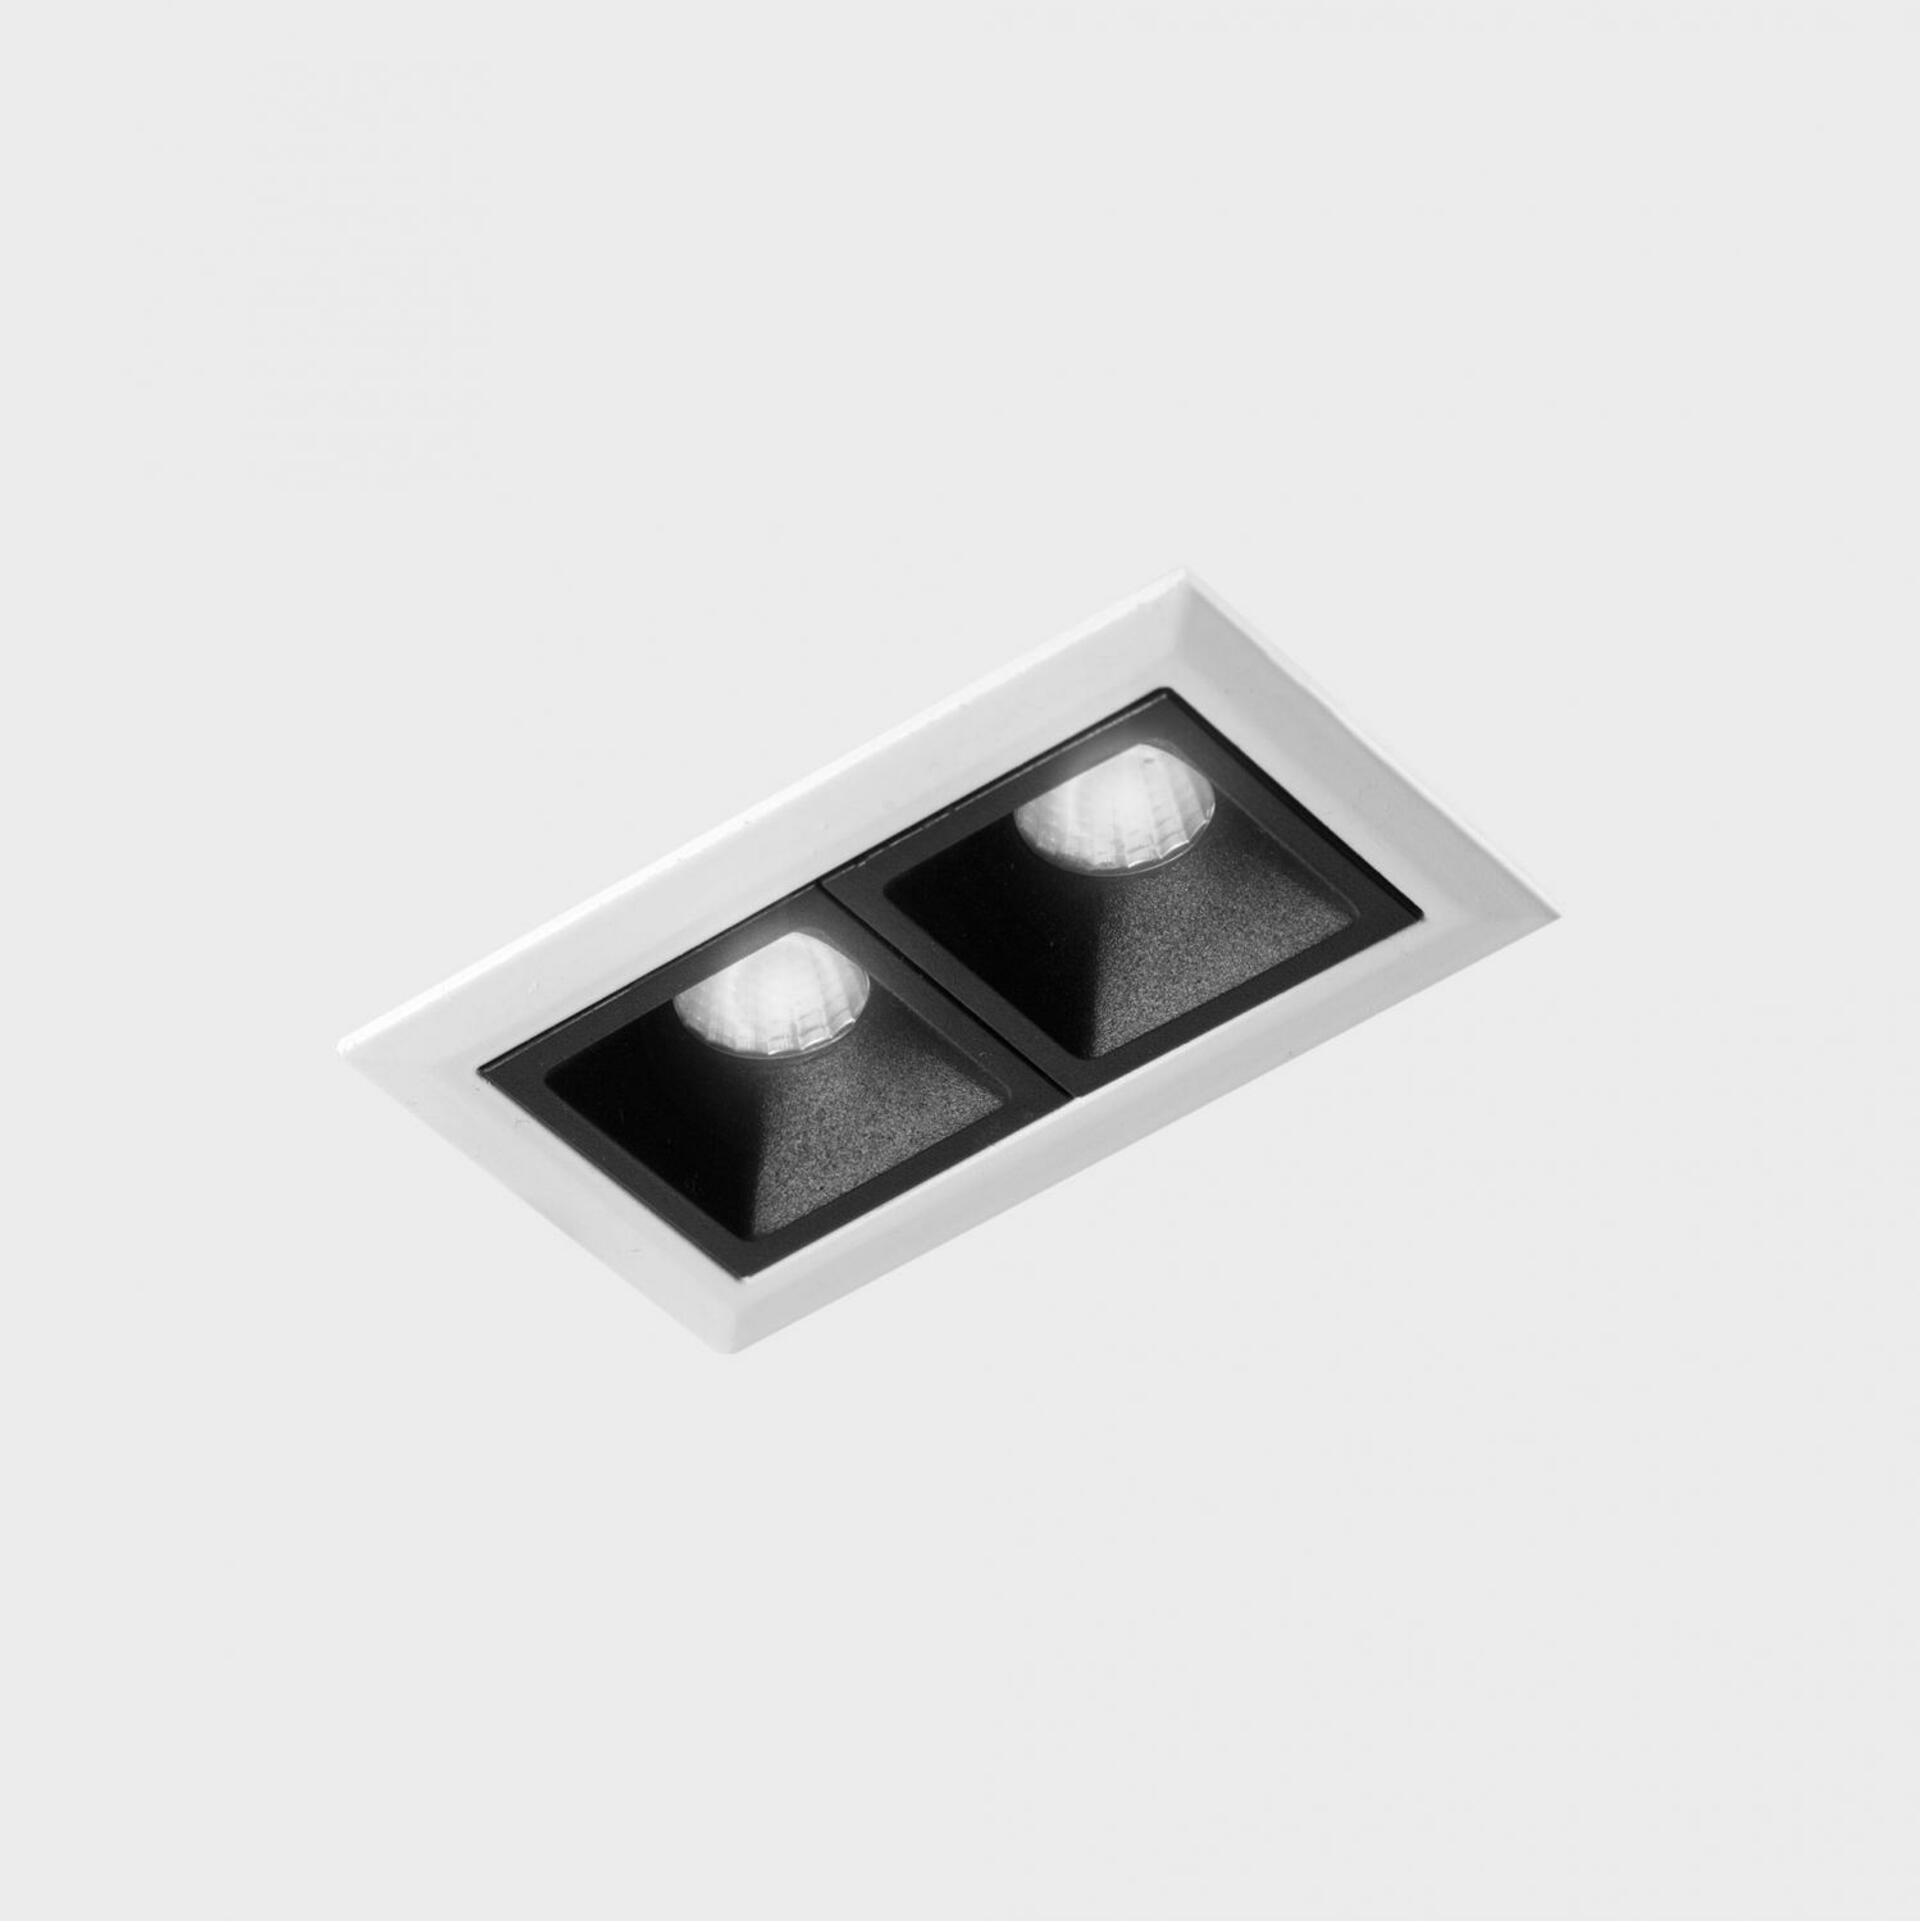 KOHL LIGHTING KOHL-Lighting NSES zapuštěné svítidlo s rámečkem 75x45 mm bílá-černá 4 W CRI 90 2700K DALI